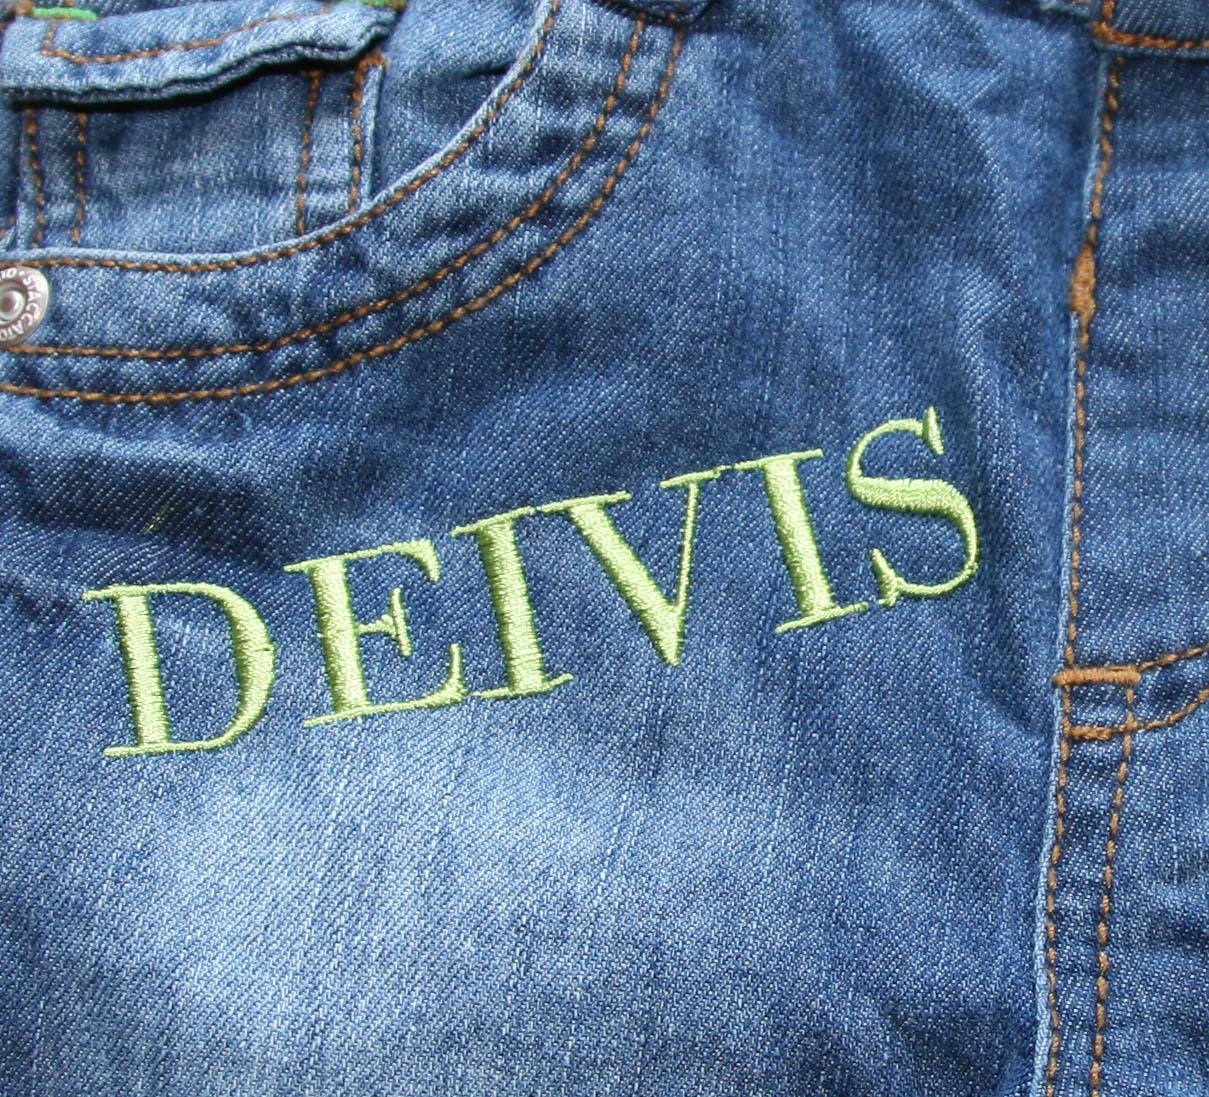 Schrift auf Jeans